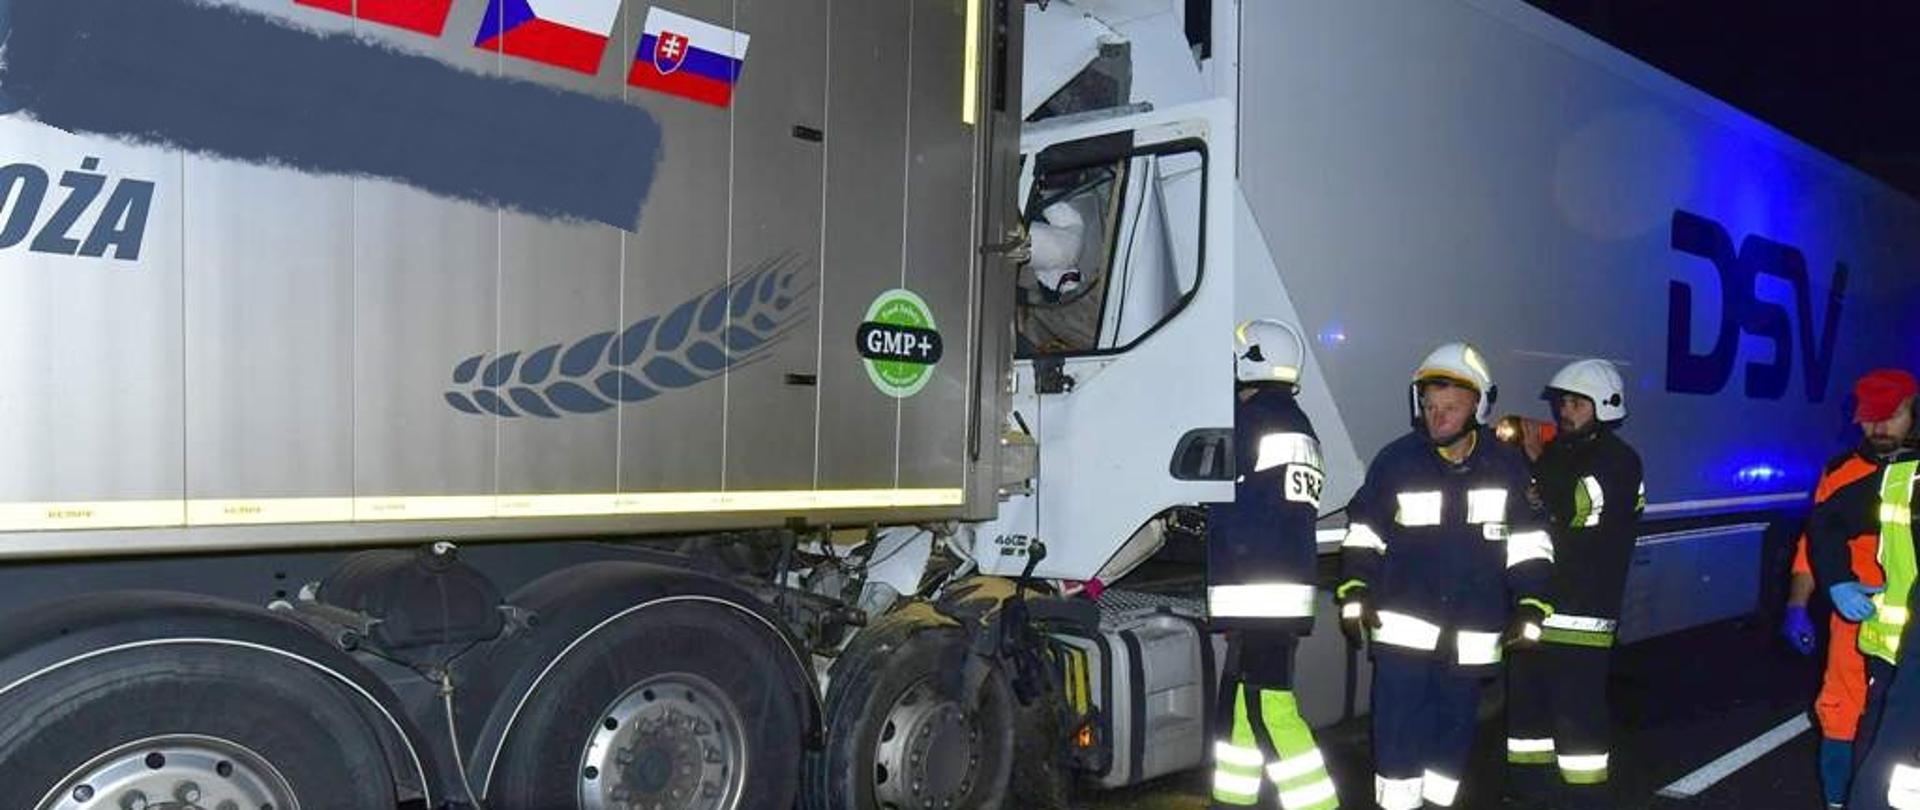 Na zdjęciu zmiażdżona kabina samochodu ciężarowego, który uderzył w stojący przed nim ciągnik siodłowy z naczepą oraz strażacy ze sprzętem hydraulicznym prowadzący działania związane z uwolnieniem zakleszczonego kierowcę.